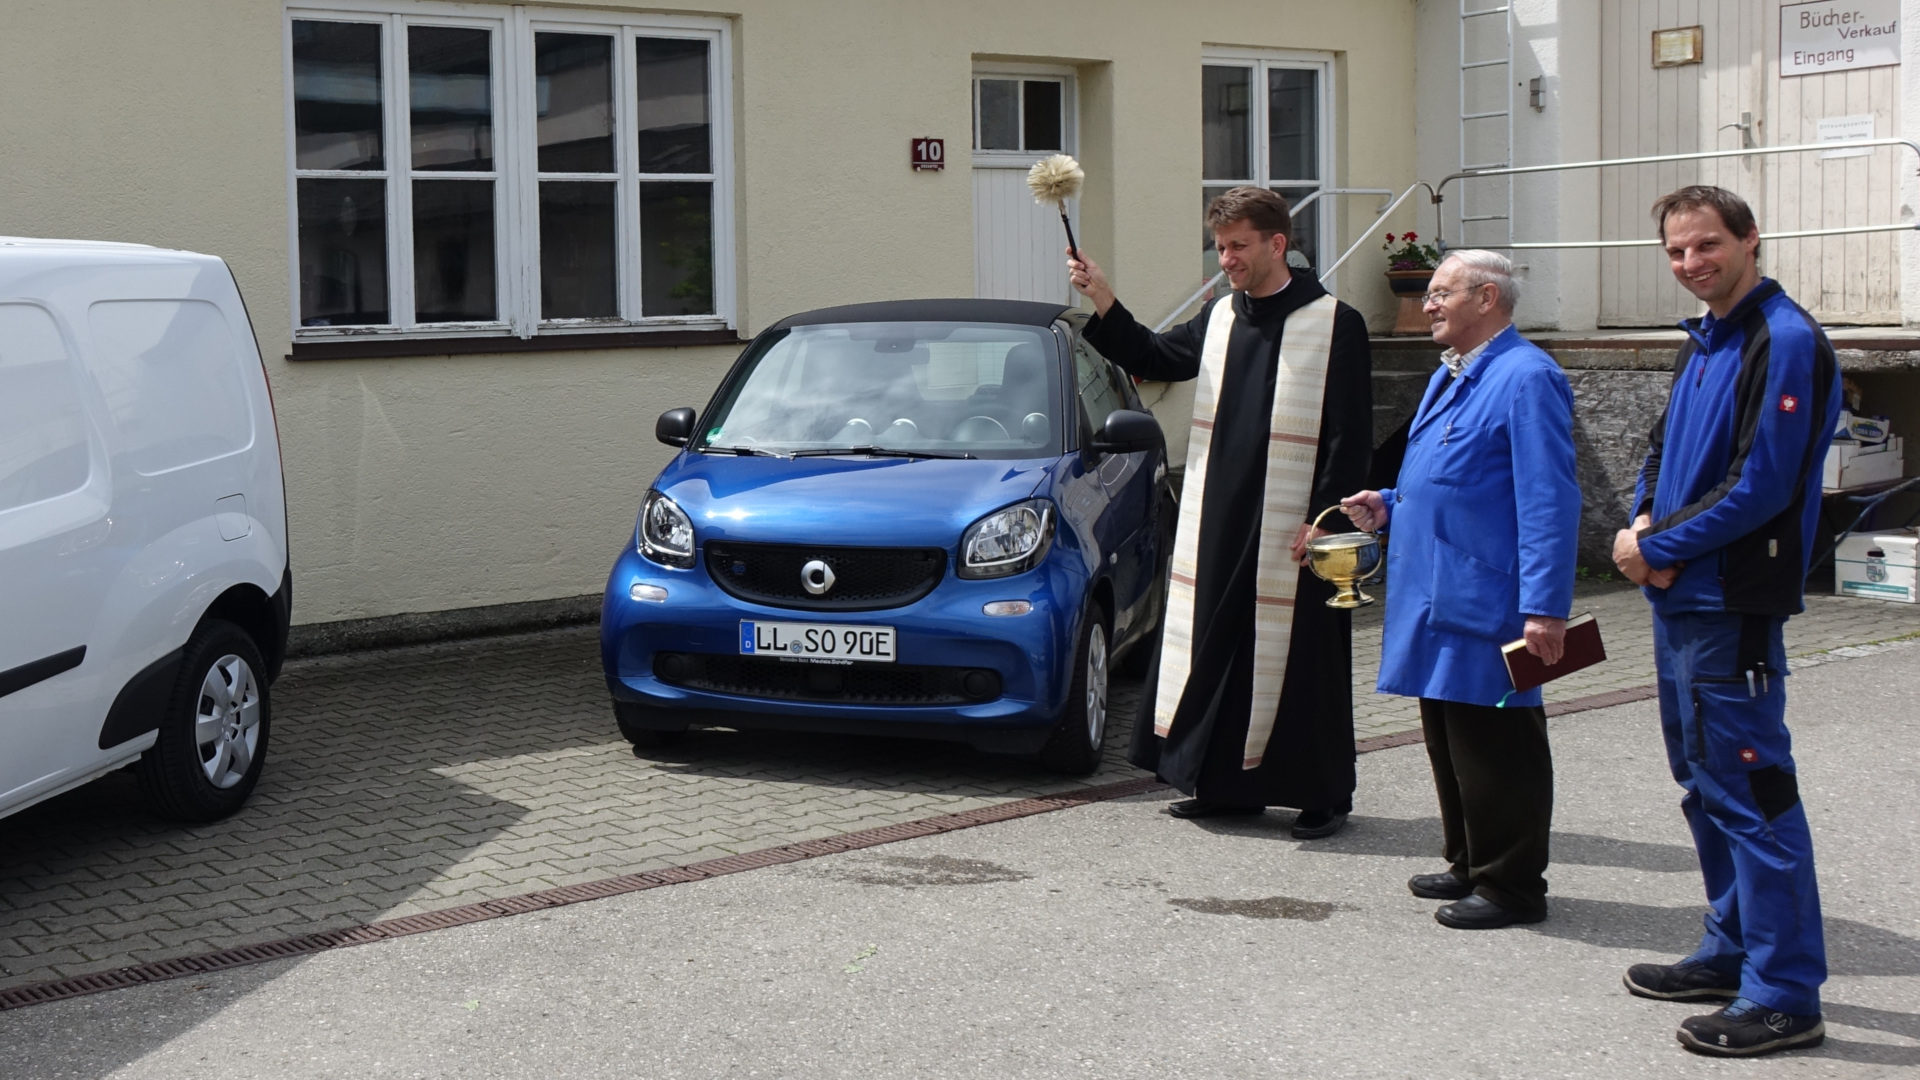 Segnung der neuen Elektroautos von St. Ottilien durch Pater Timotheus, daneben Automechaniker